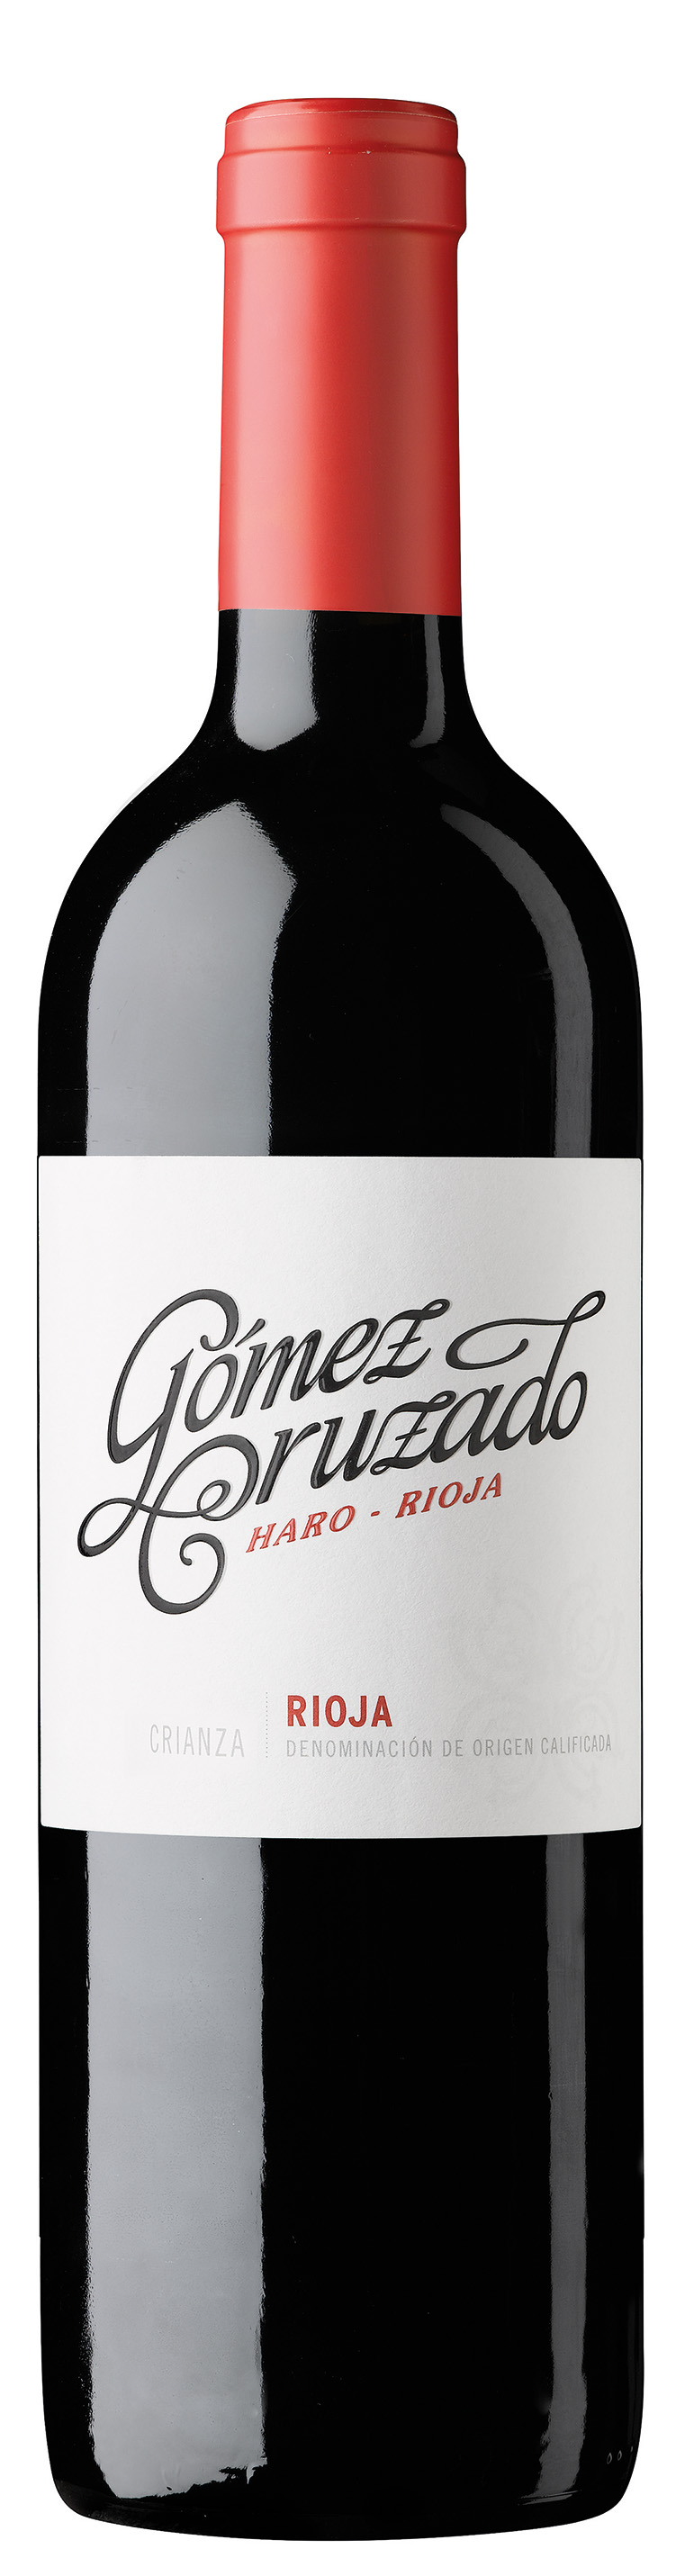 Crianza "Gomez Cruzado" Rioja DOCa 2020